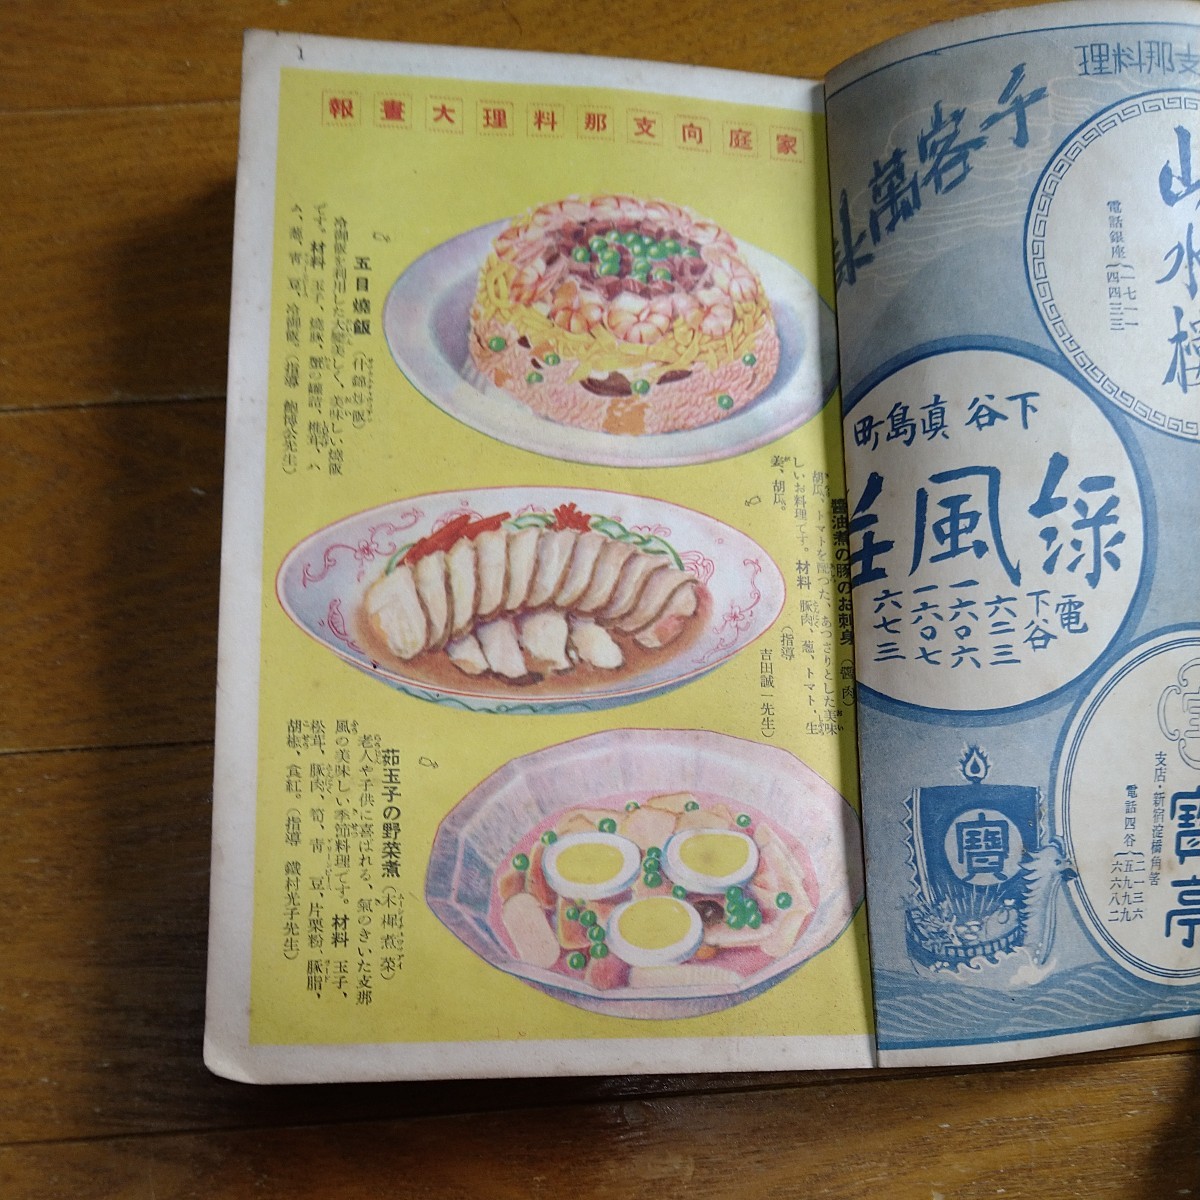  простой возможно семья направление главный . кулинария три 100 вид женщина клуб Showa 8 год 11 месяц номер дополнение китайская кухня 